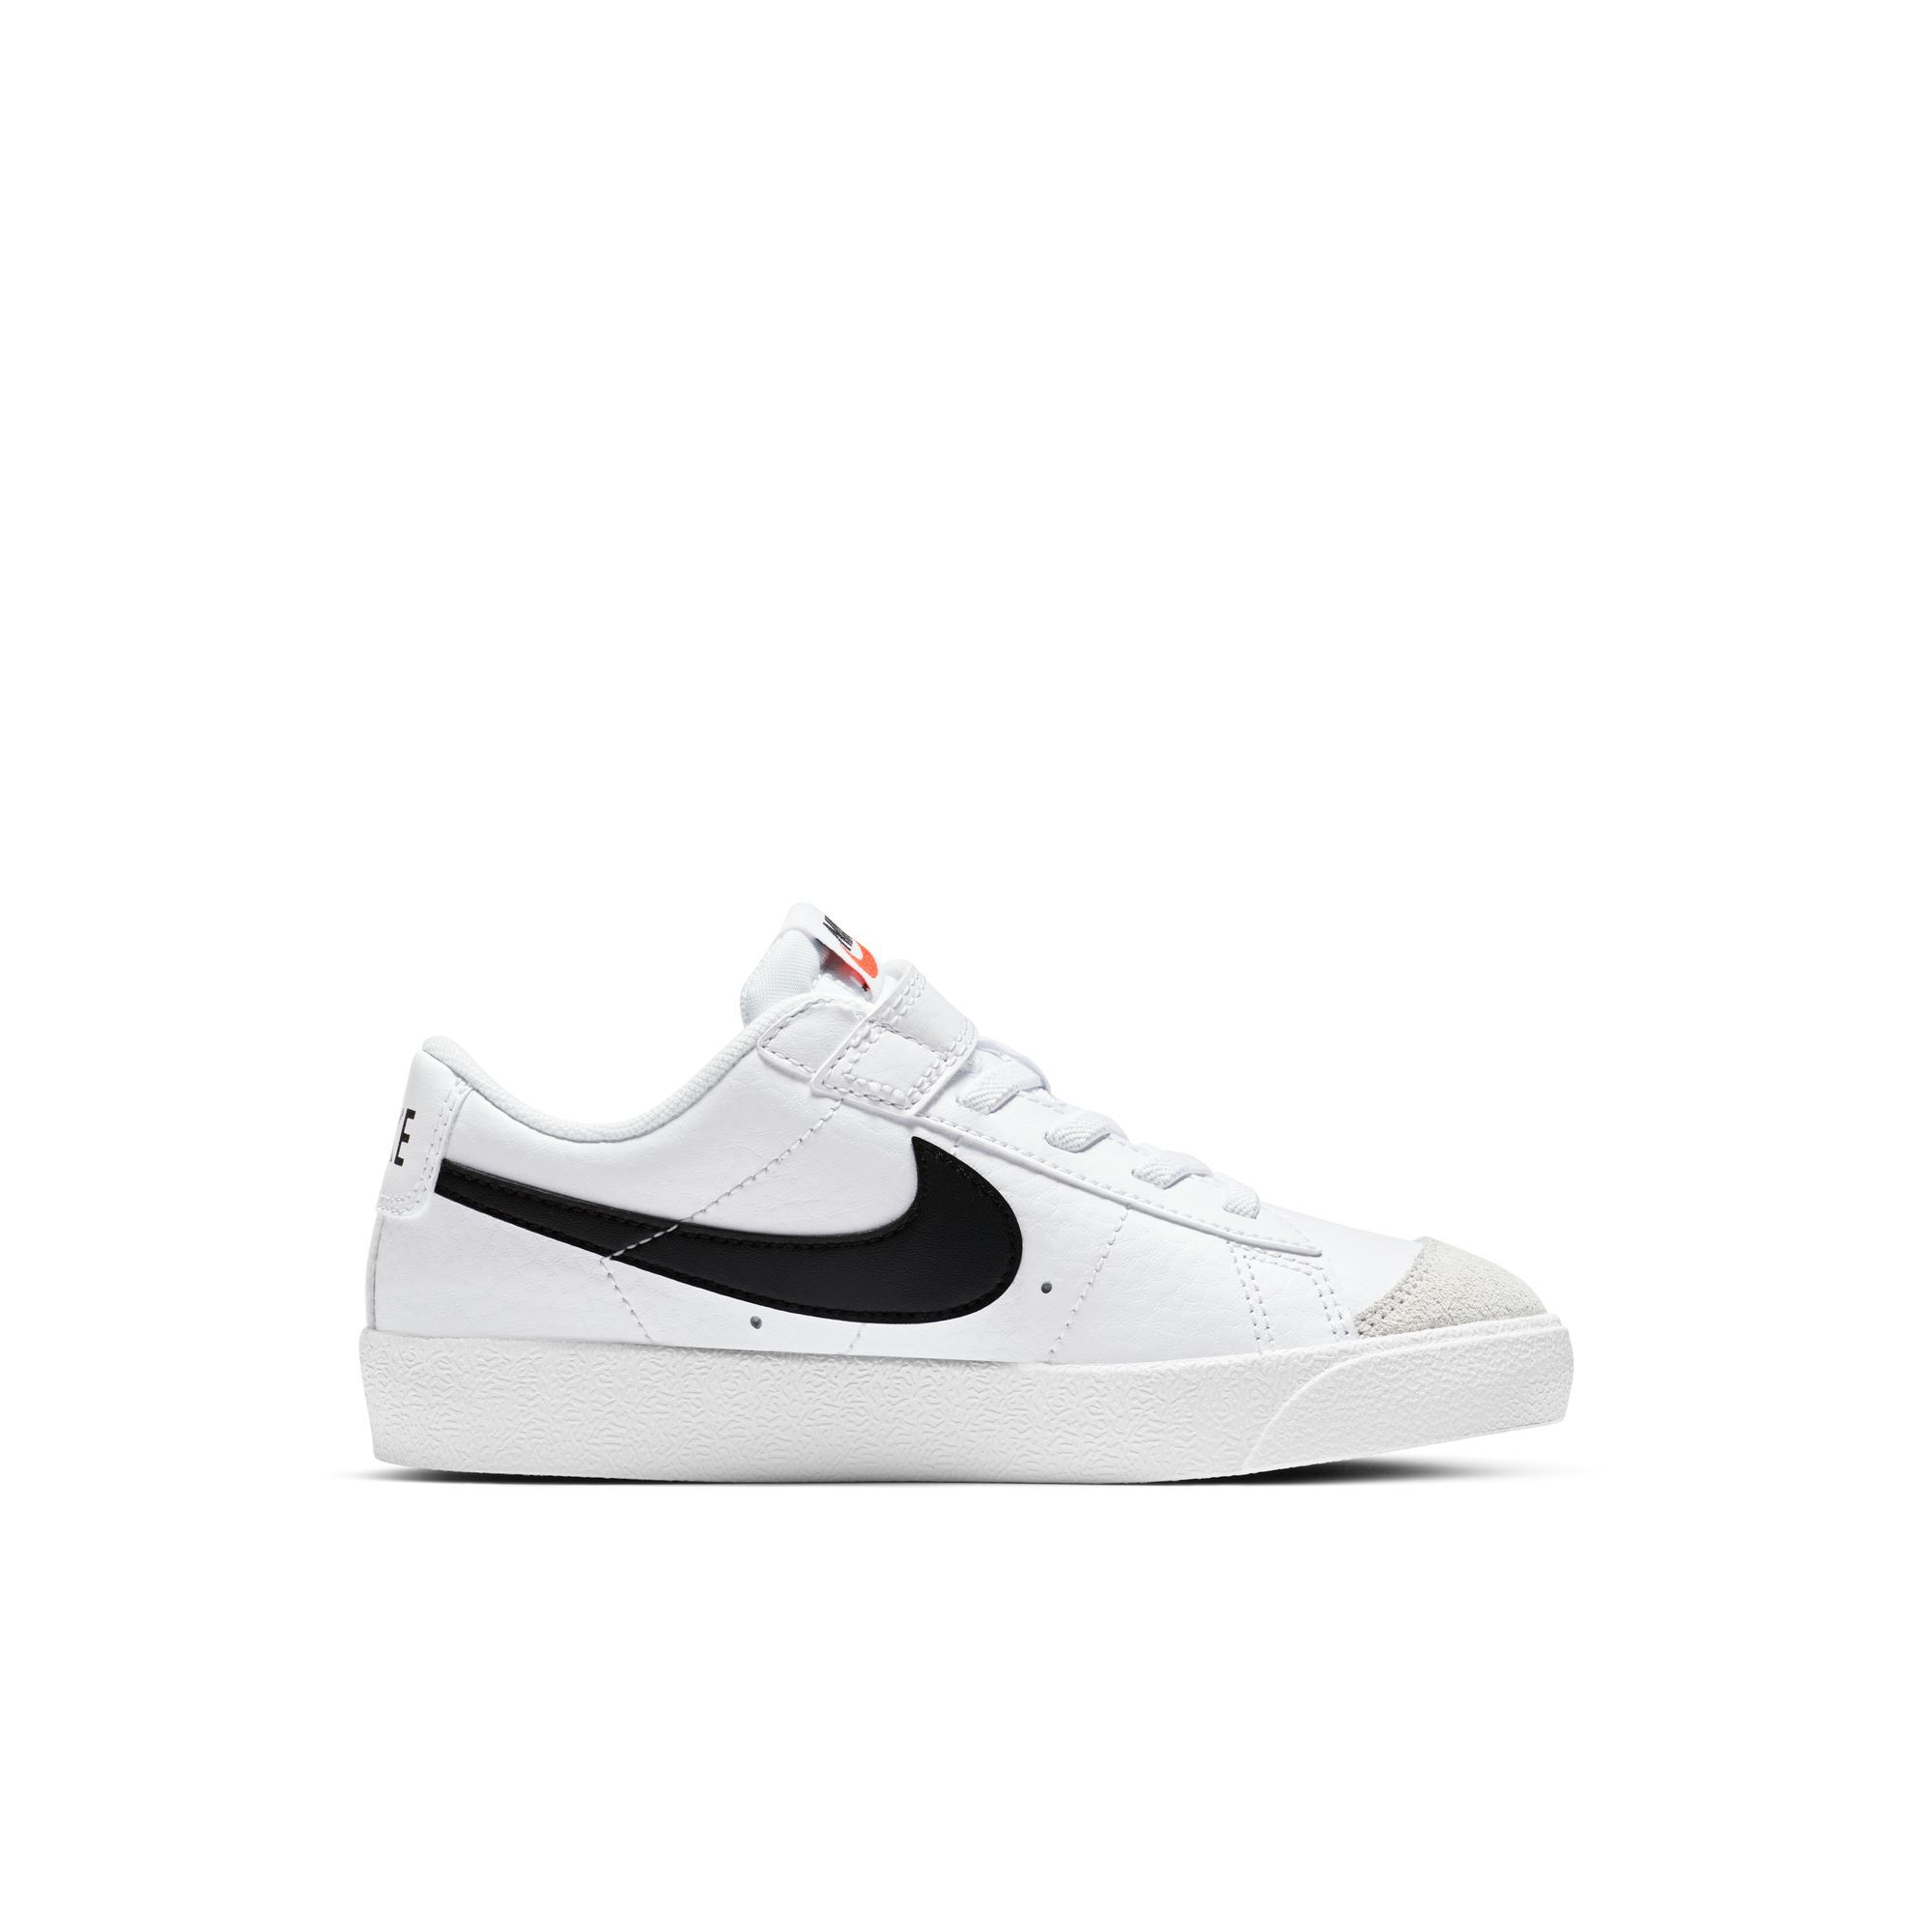 Nike Blazer Low '77, Blanco/Naranja total/Negro, hi-res